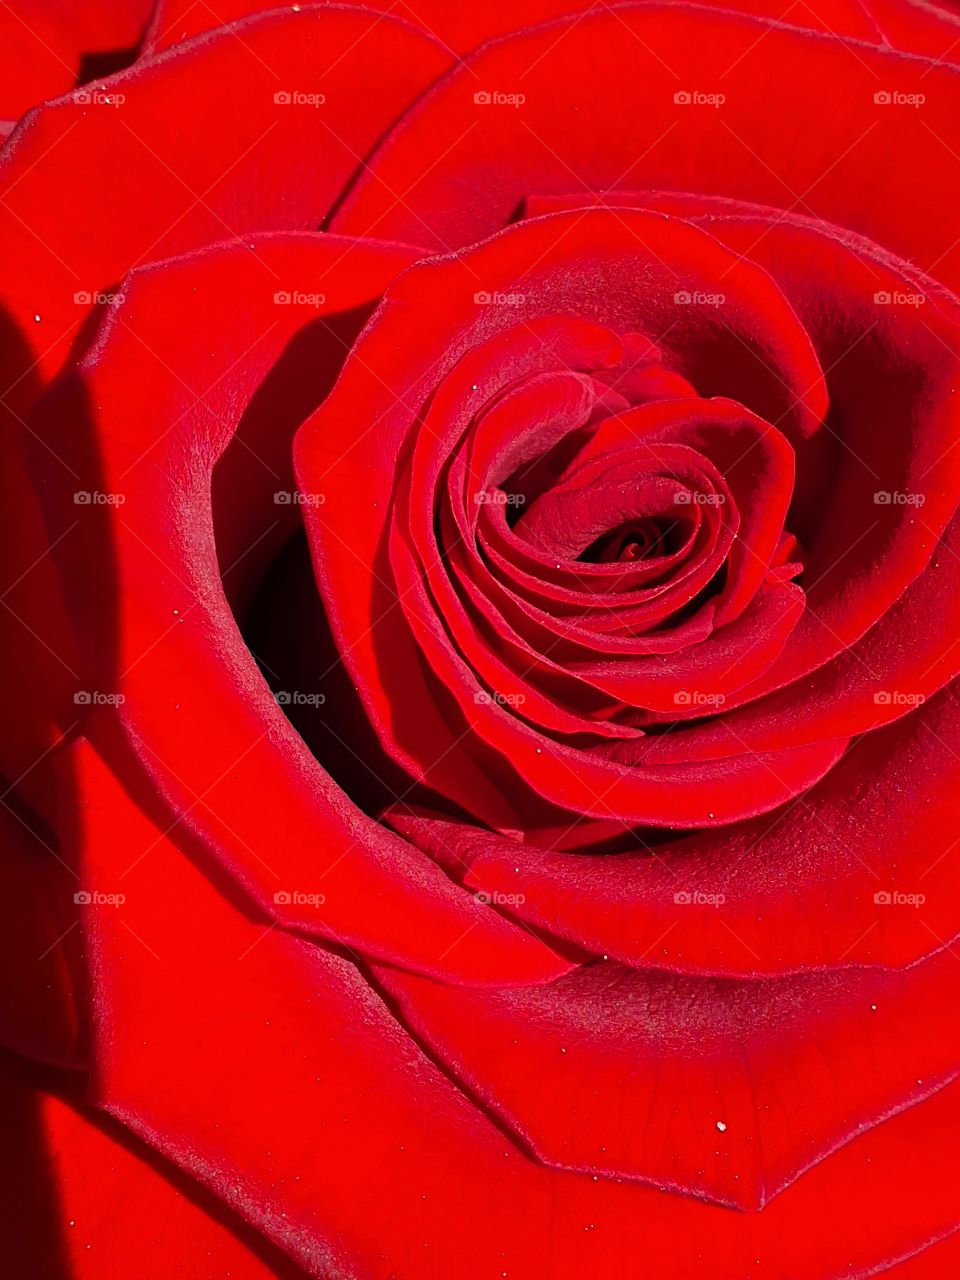 velvet red rose center closeup